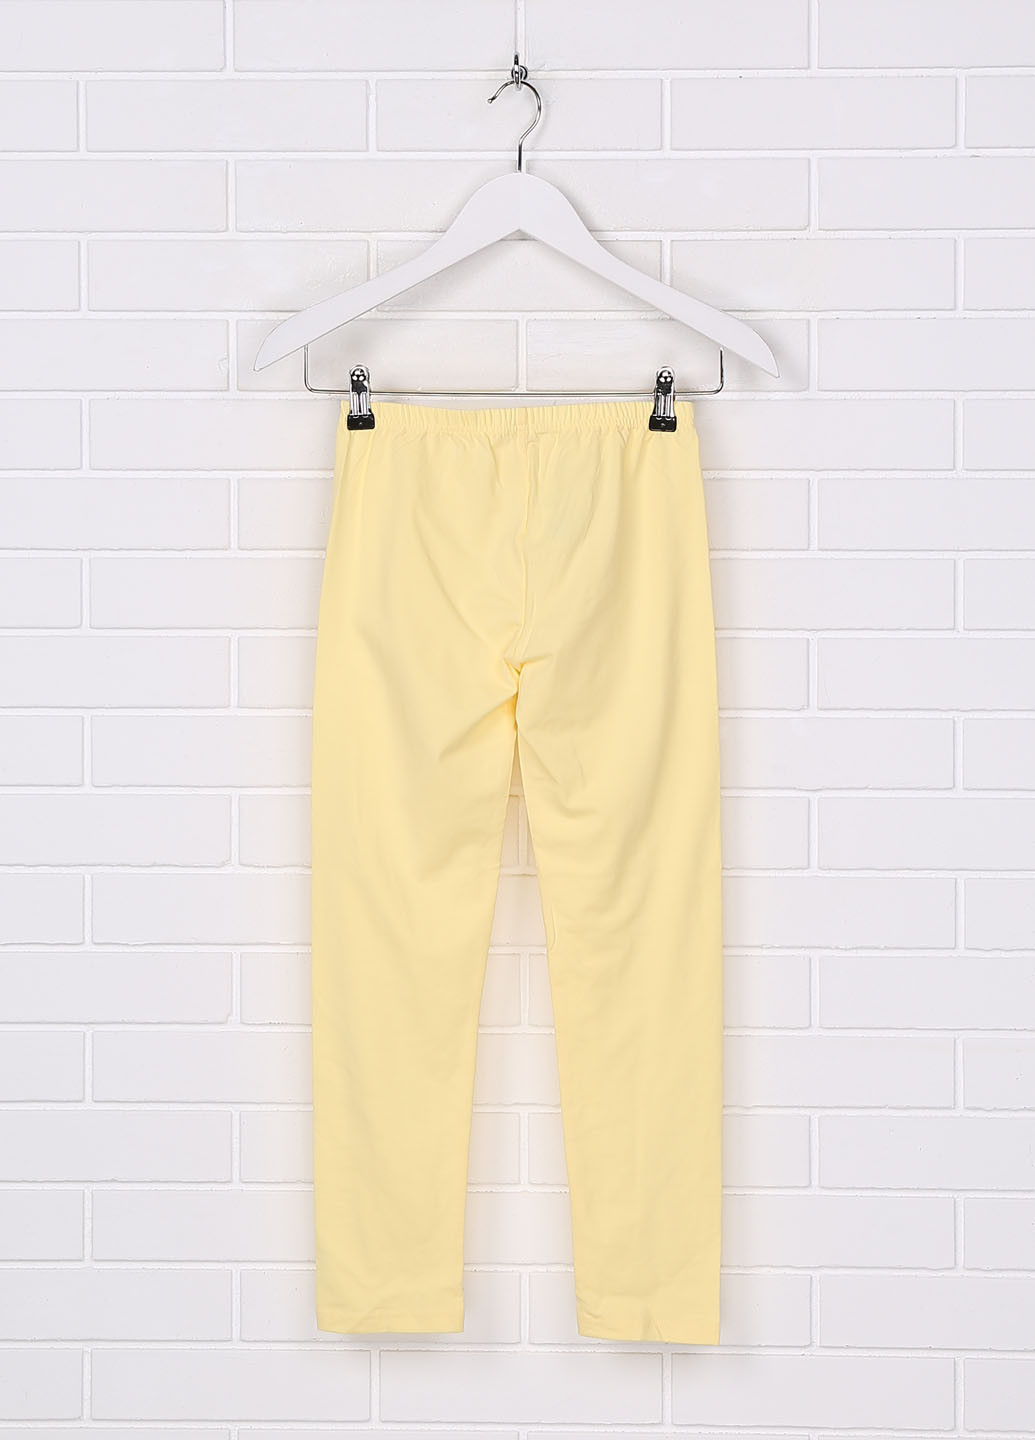 Желтые домашние демисезонные прямые брюки Yclu